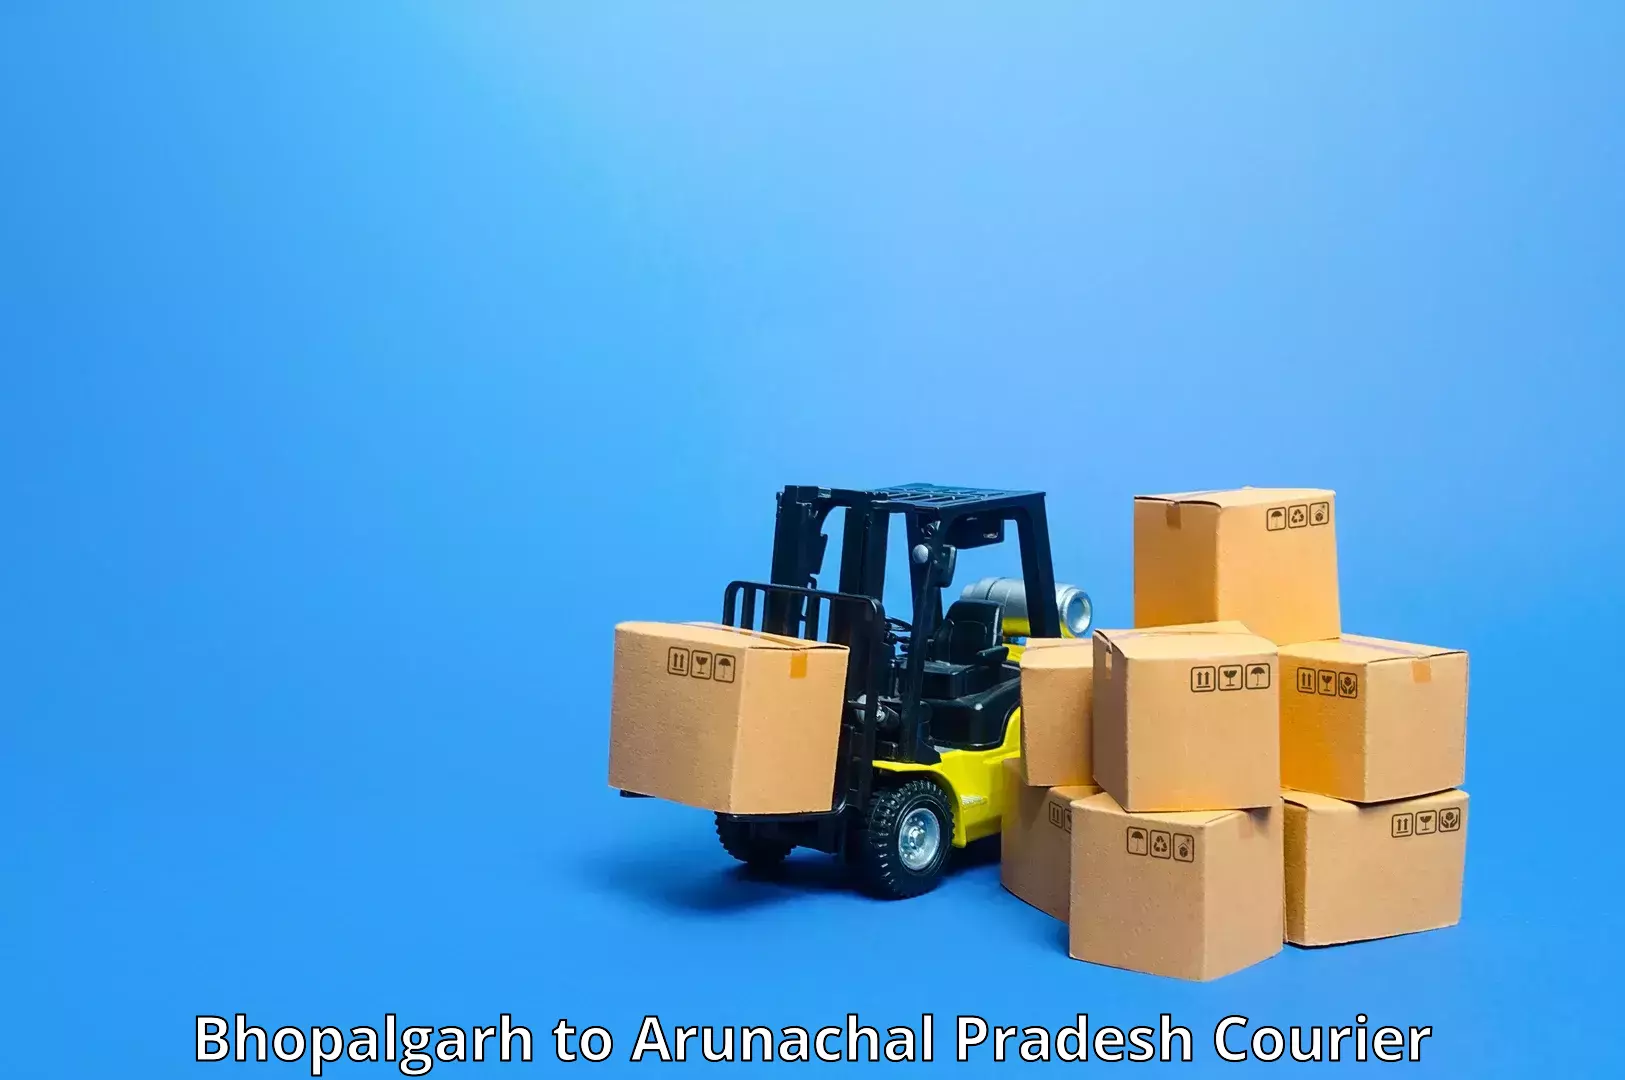 Tech-enabled shipping Bhopalgarh to Tezu